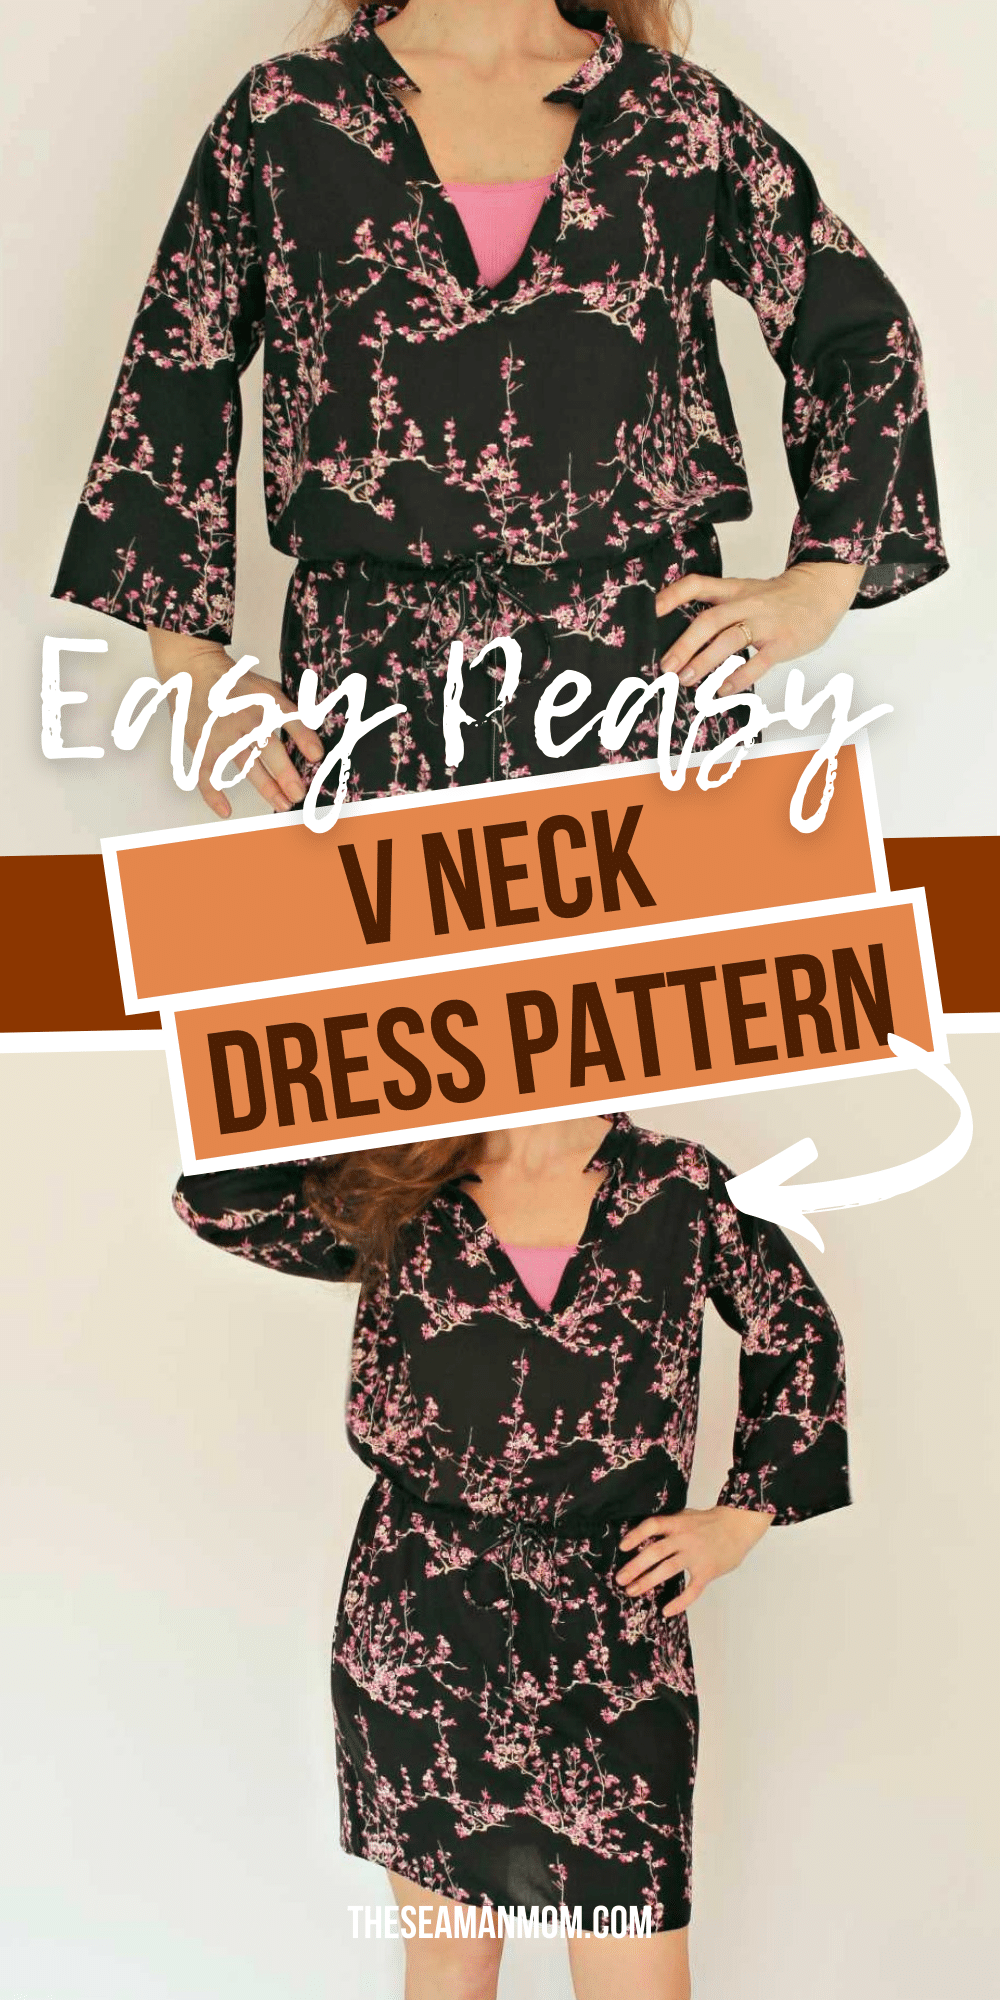 V neck dress pattern